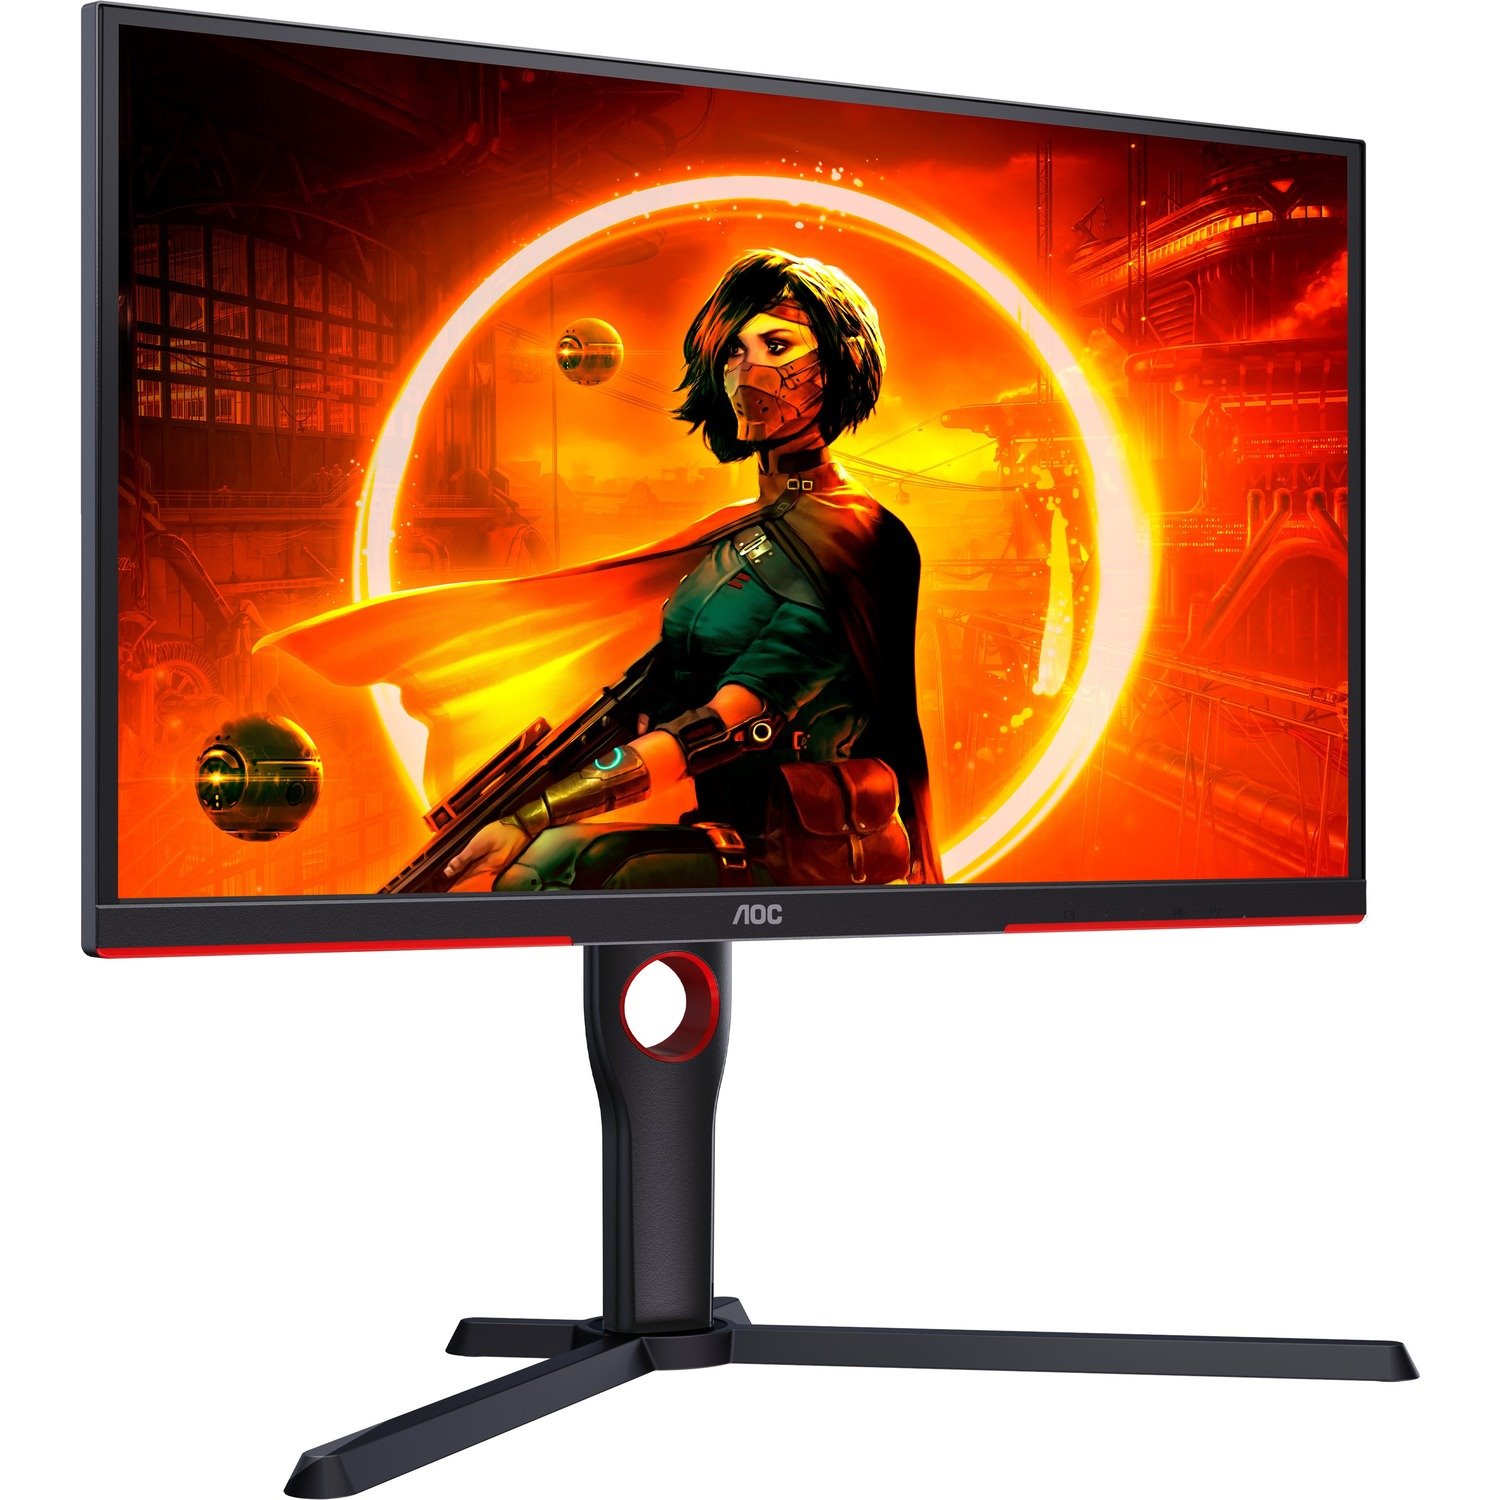 AOC 25G3ZM 25" Class Full HD Gaming LCD Monitor - 16:9 - Red, Black